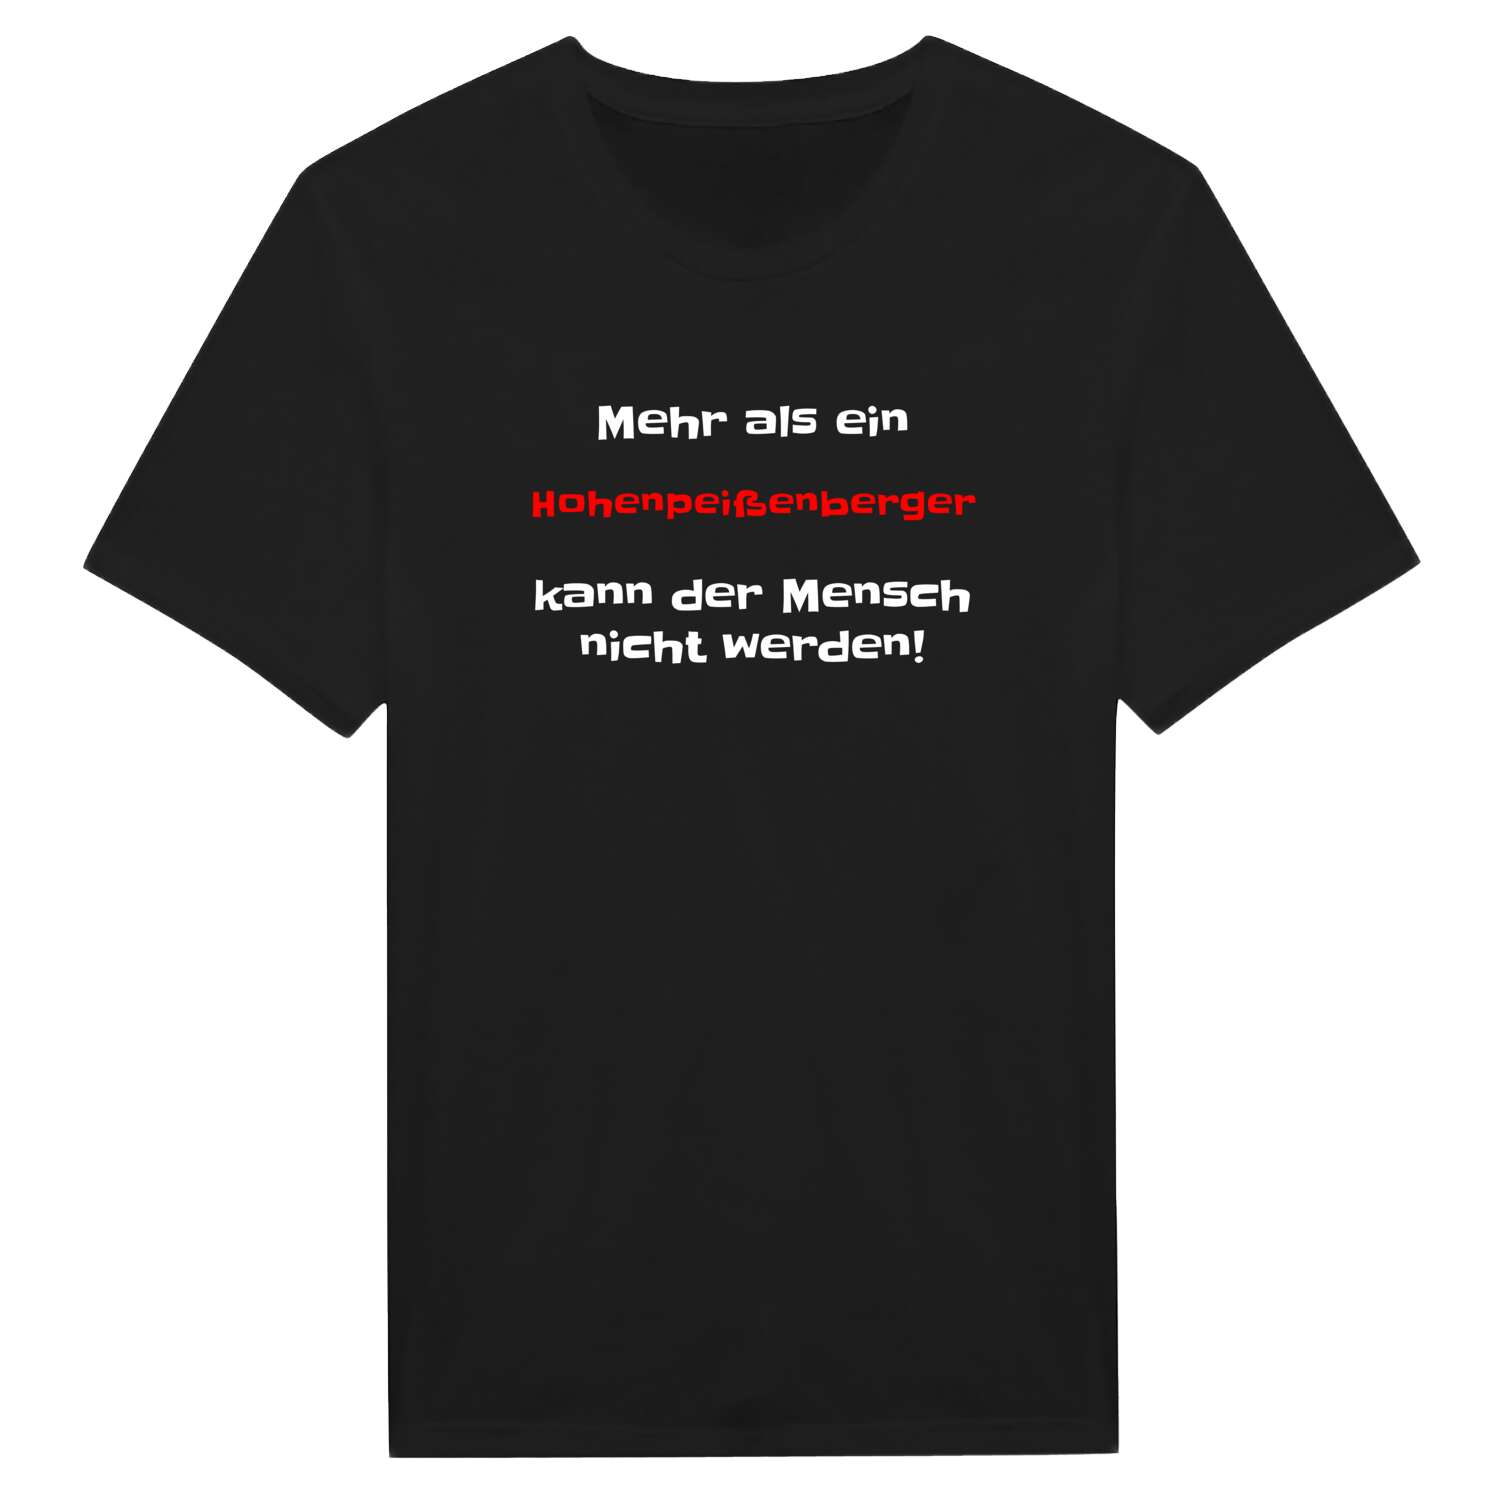 Hohenpeißenberg T-Shirt »Mehr als ein«